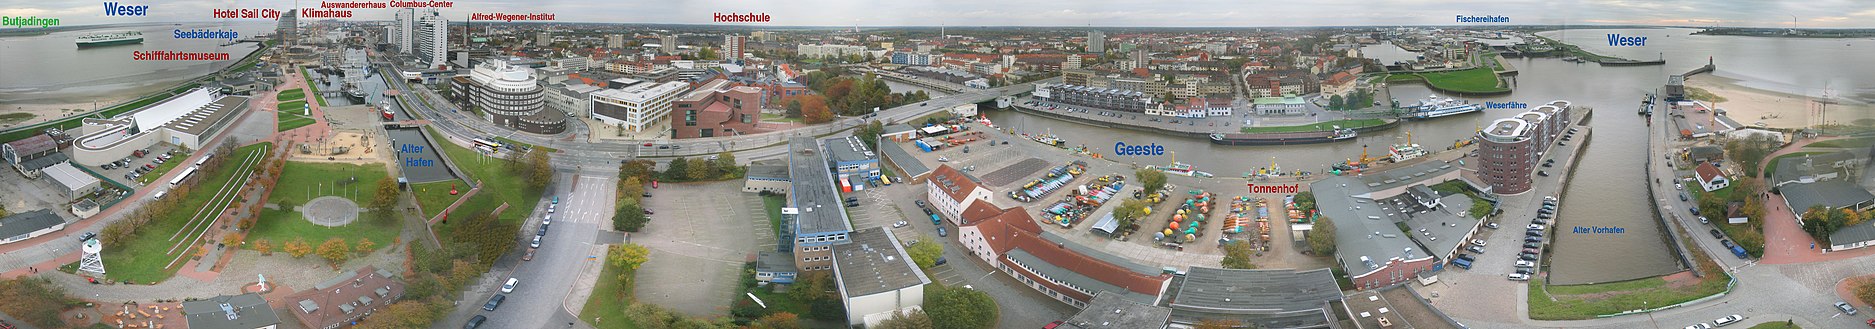 Utblick över Bremerhoben, sien Attraktschonen un de Werser